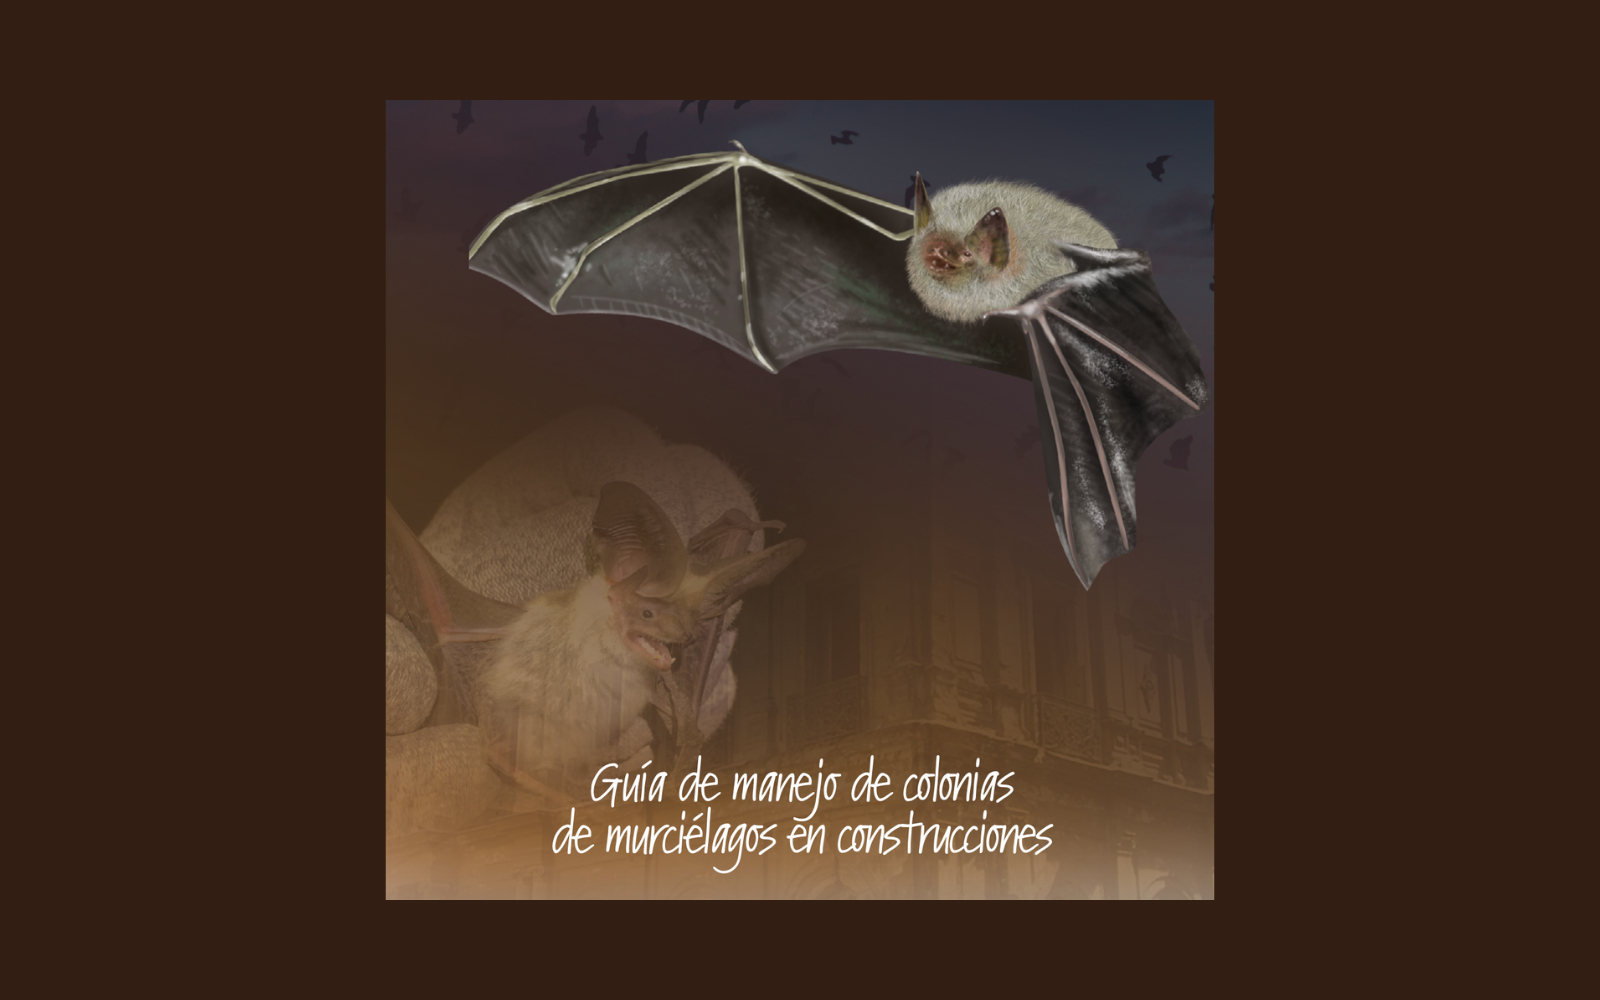 Guía de manejo de murciélagos busca apoyar gestión municipal y ciudadana